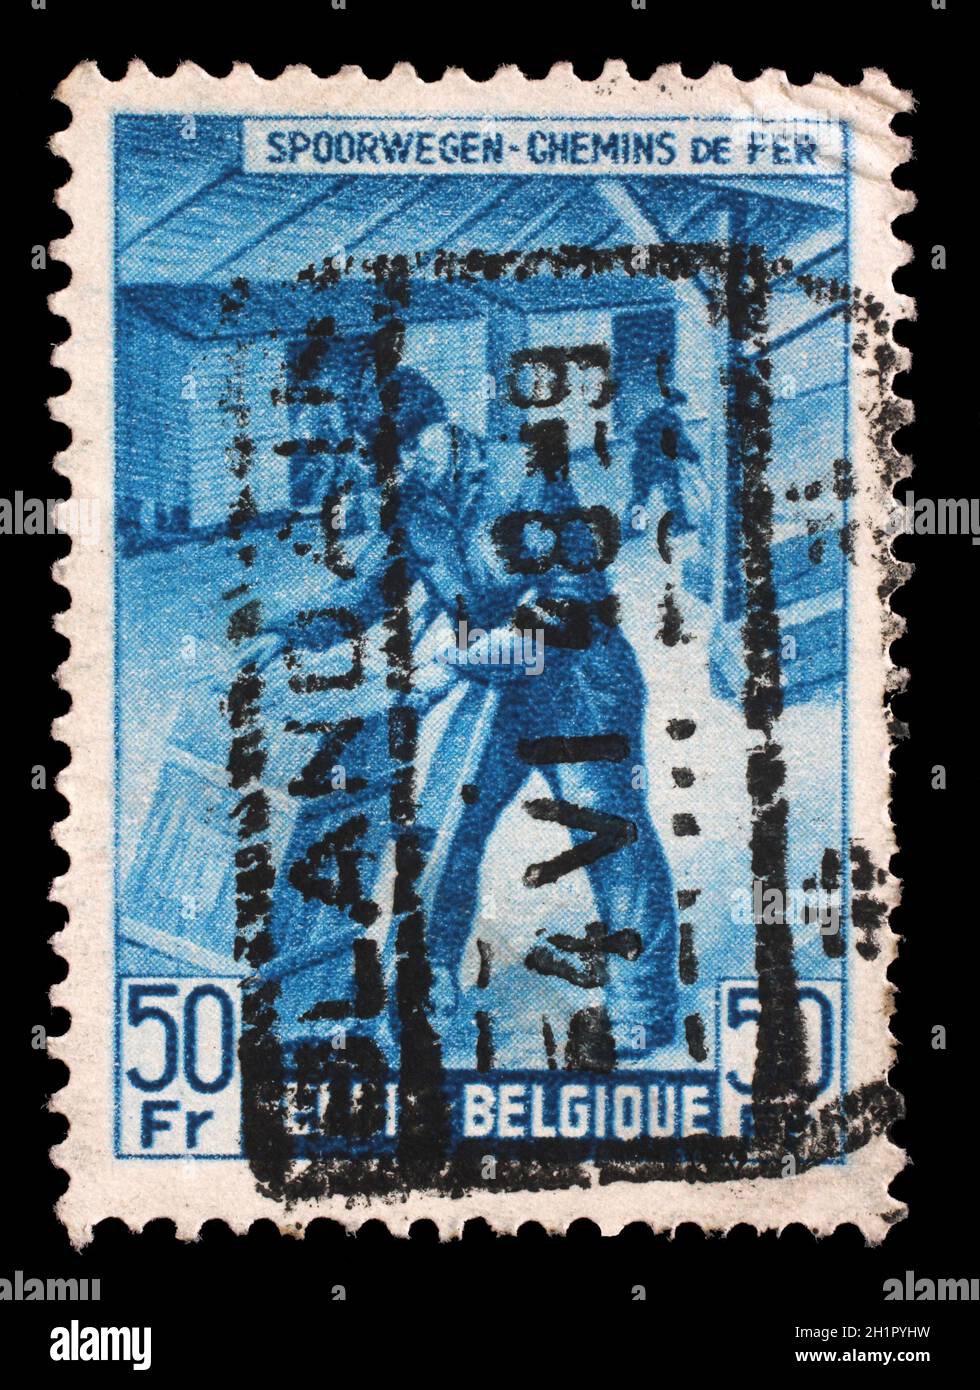 Briefmarke gedruckt in Belgien zeigt Box-Versender von der Eisenbahngesellschaft in Frage, ca. 1945. Stockfoto